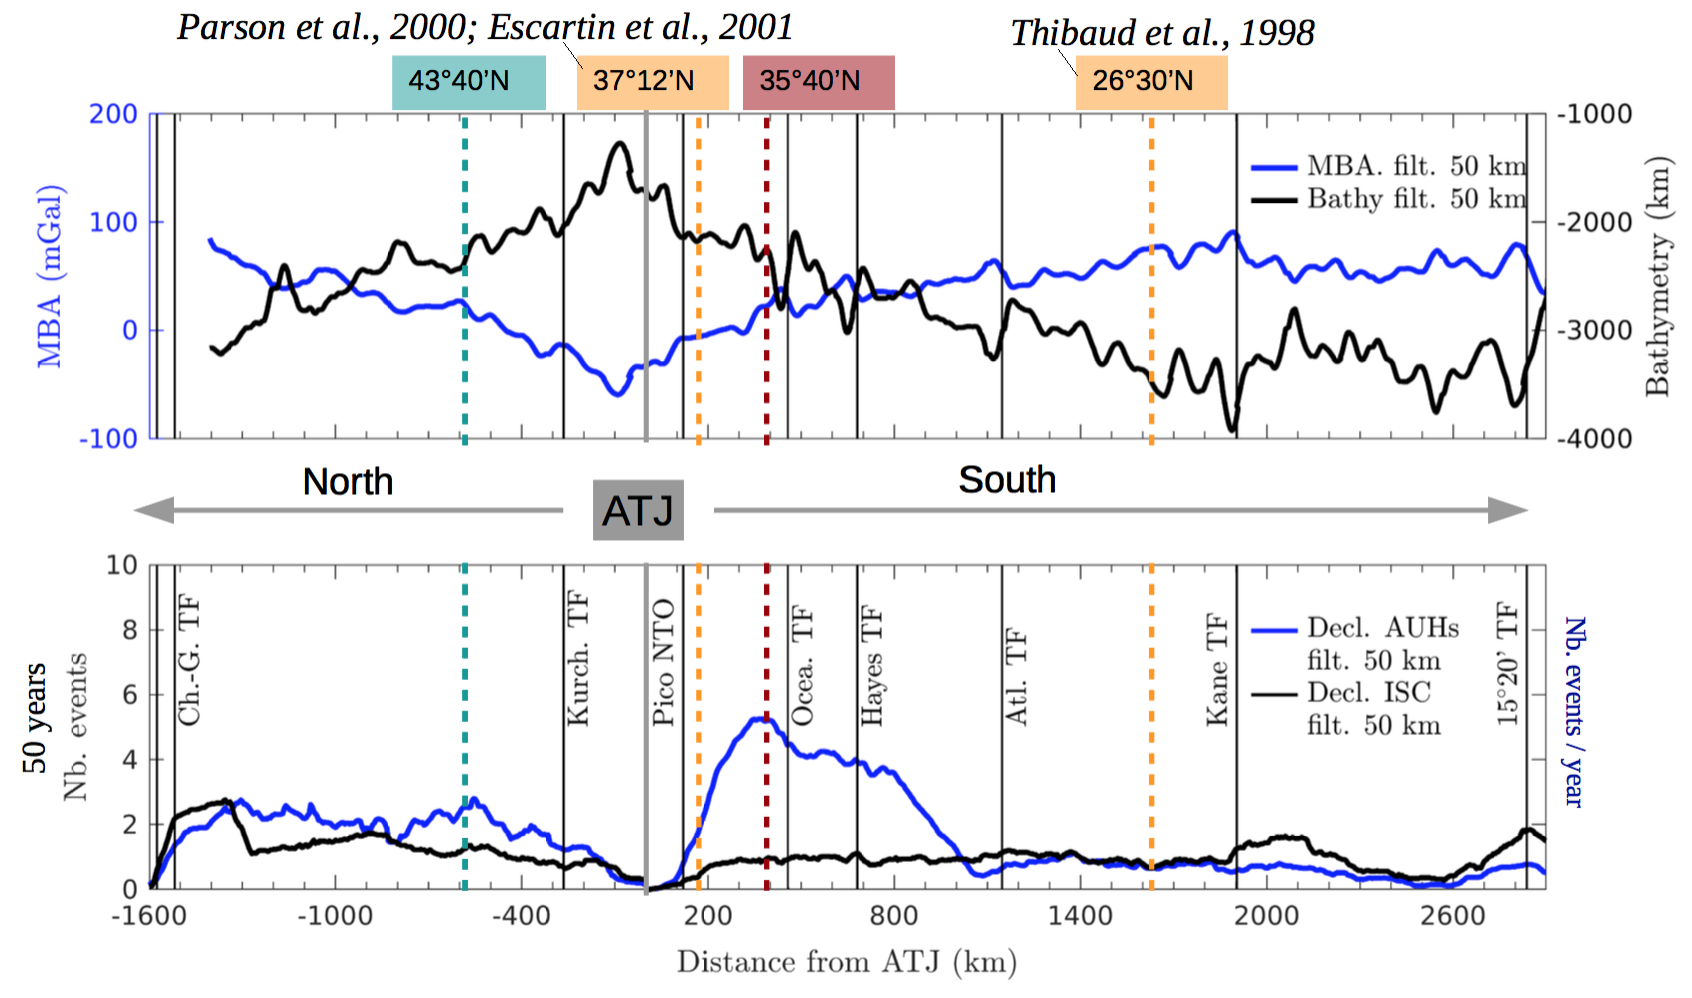 Distribution le long de la DMA Nord des données géophysiques à grande échelle, filtre passe-bas 50 km. (Haut) Bathymétrie (courbe noire) et MBA (courbe bleue). (Bas) Sismicité des catalogues déclusterisés hydroacoustique (courbe bleue) et télésismique (courbe noire). Les failles transformantes et zones de fractures majeures sont indiquées (ligne noire continue). Limite d’influence du point chaud des Açores : Nord à 43◦40′ N (ligne pointillée bleue) (Goslin, 1999; Maia et al., 2007; Goslin et al., 2012). Sud à 37◦12′ N (Detrick et al., 1995; Parson et al., 2000; Escartin et al., 2001), 26◦30′ N (Thibaud et al., 1998 ; ligne pointillée orange). Nouvelle limite sud proposée à 35◦40′ N (ligne pointillée rouge) (Giusti et al, 2019).